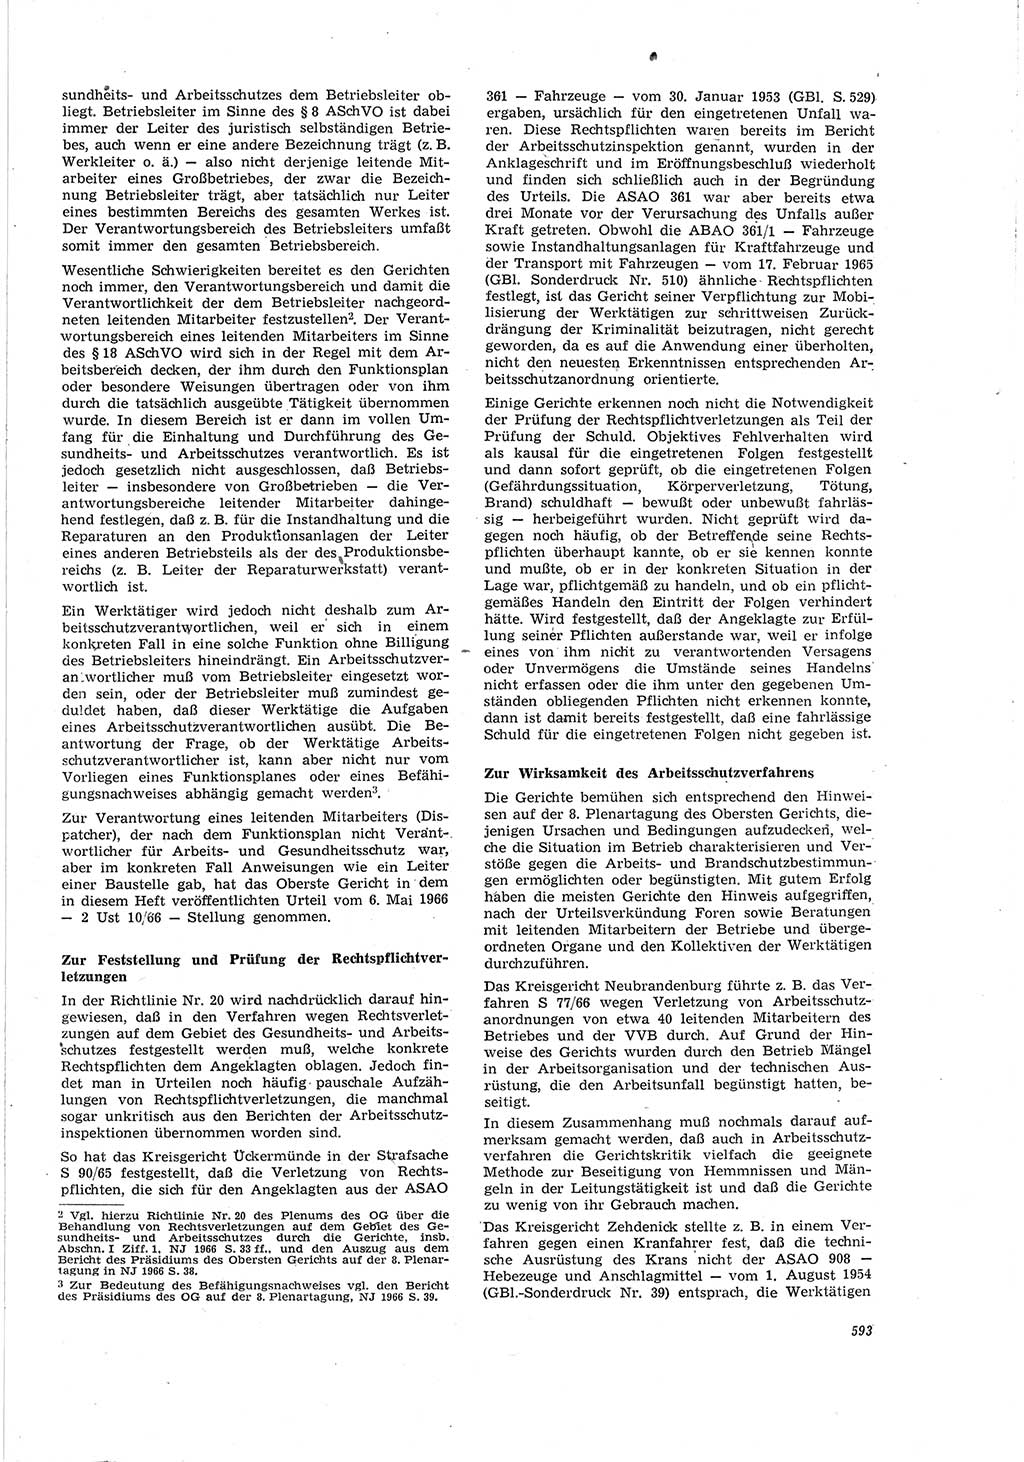 Neue Justiz (NJ), Zeitschrift für Recht und Rechtswissenschaft [Deutsche Demokratische Republik (DDR)], 20. Jahrgang 1966, Seite 593 (NJ DDR 1966, S. 593)